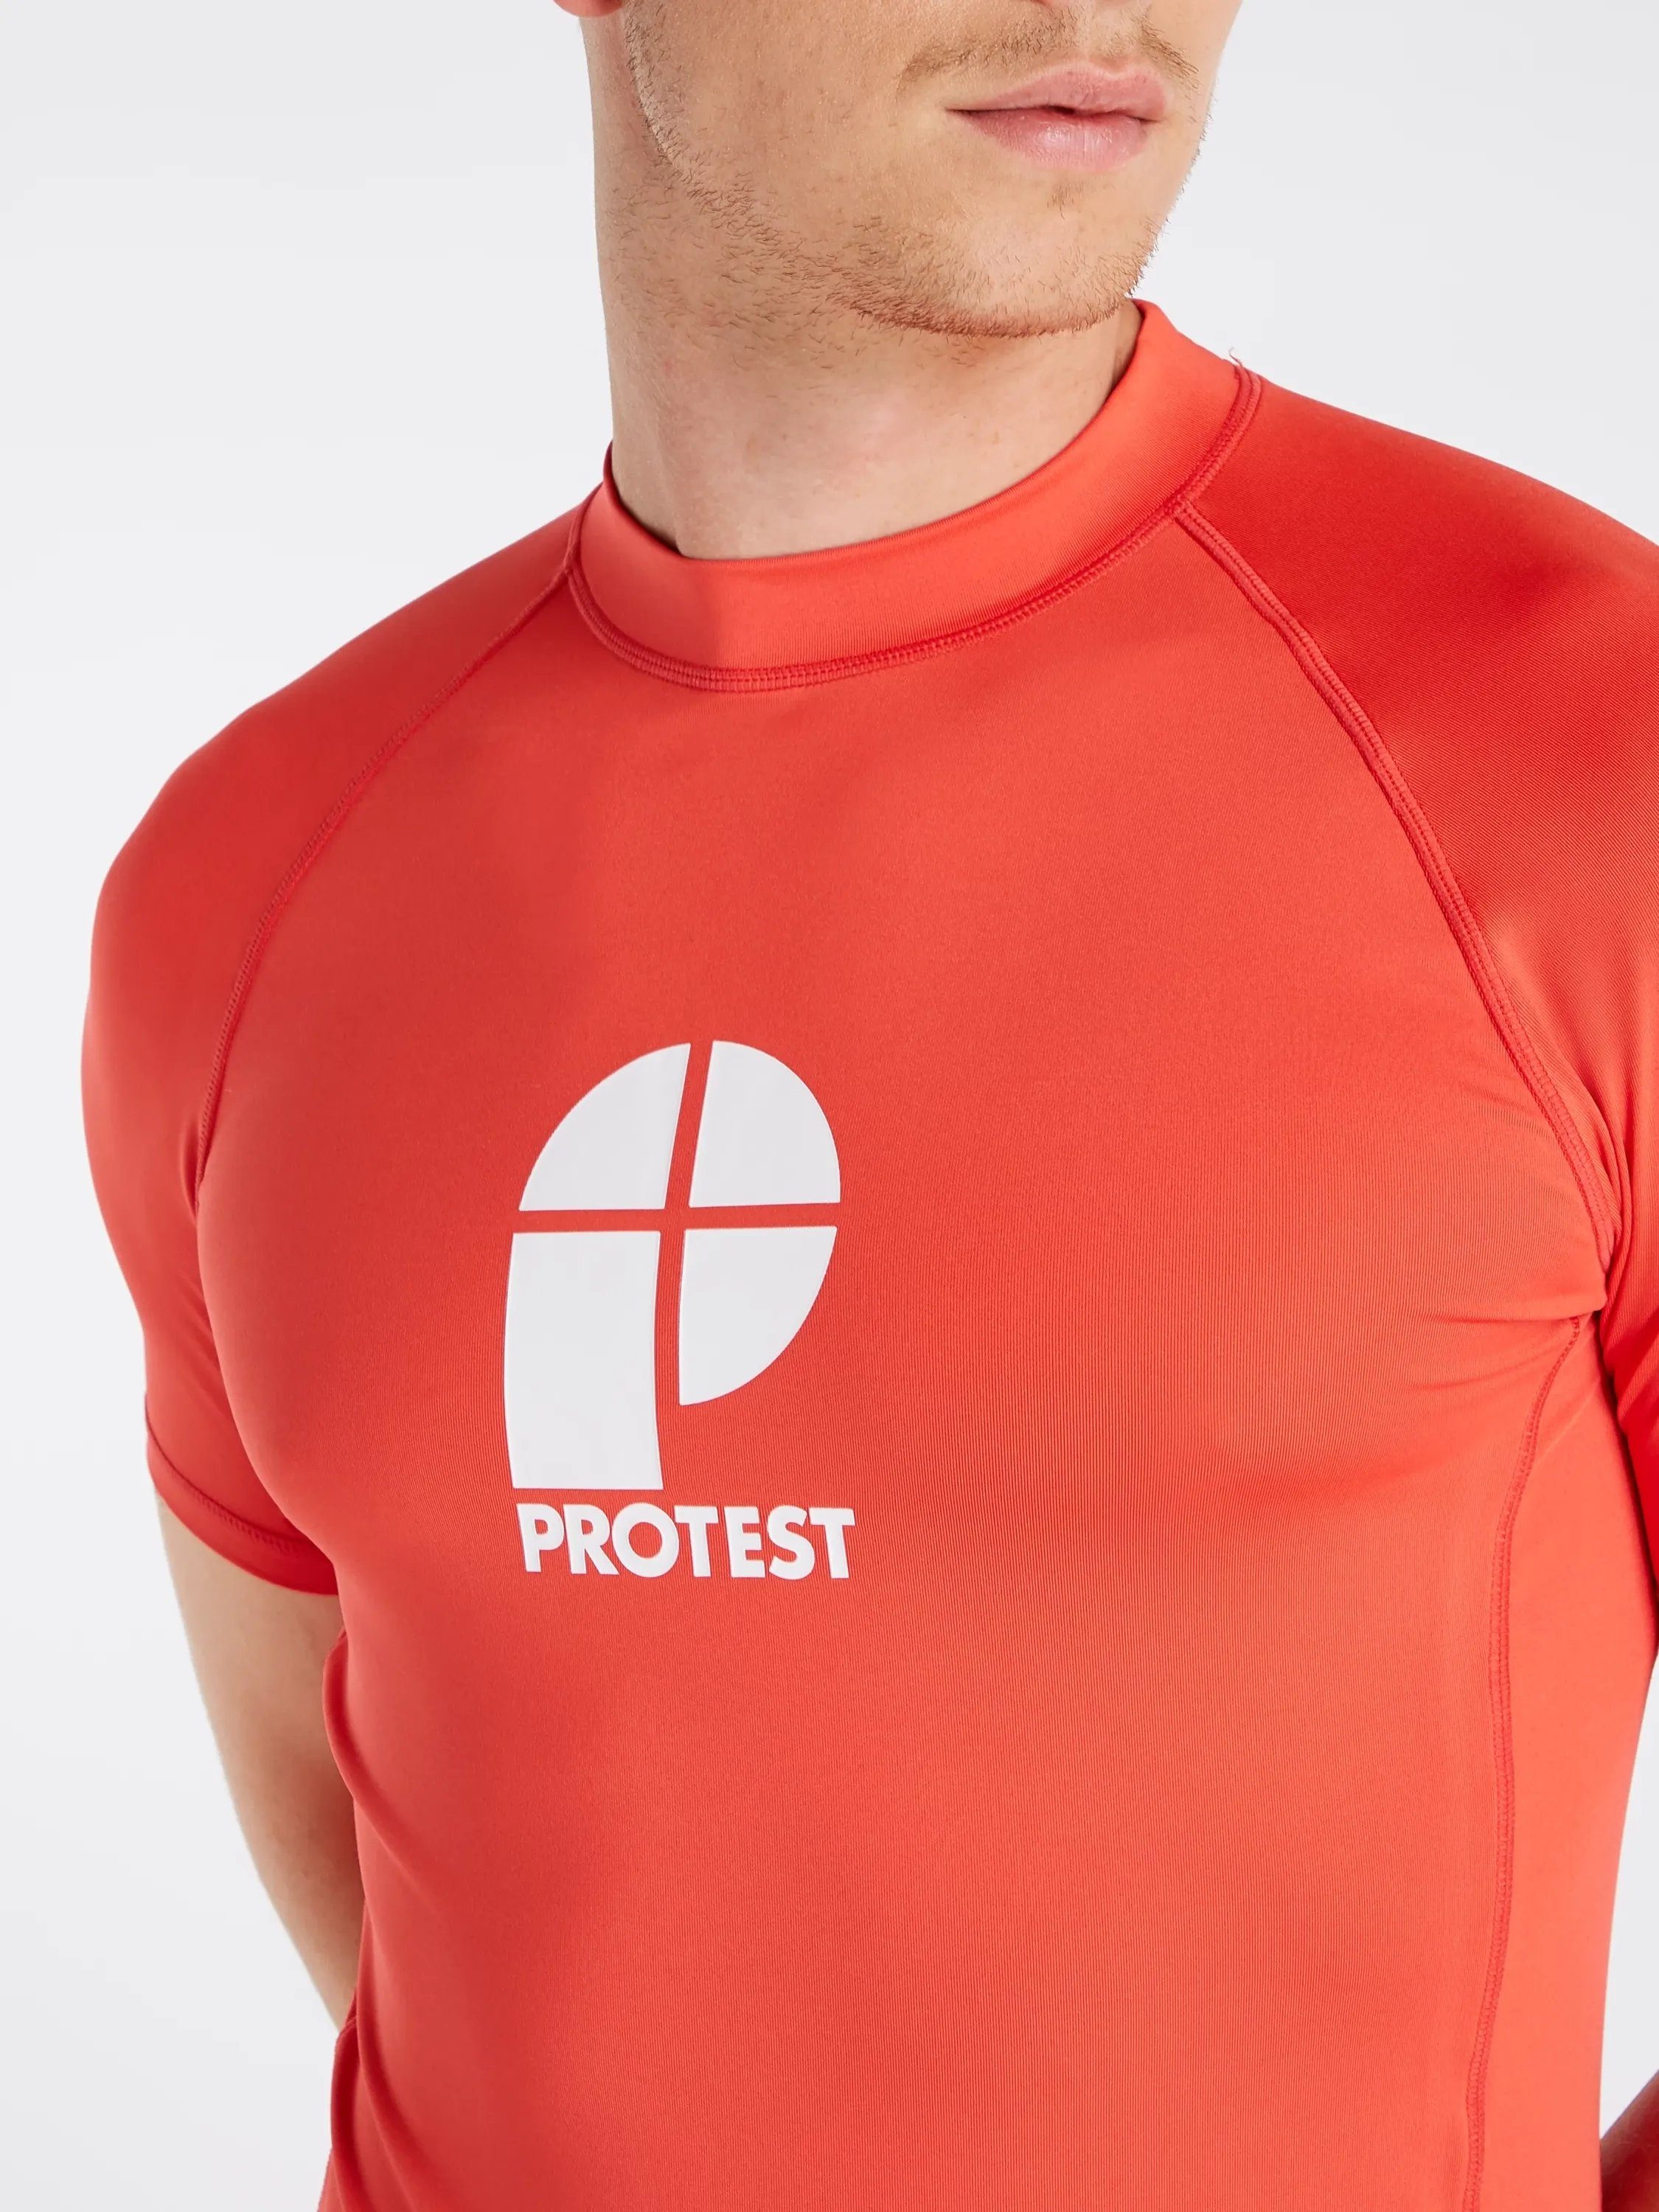 PRTCATER T-Shirt rashguard Tomato short Protest sleeve